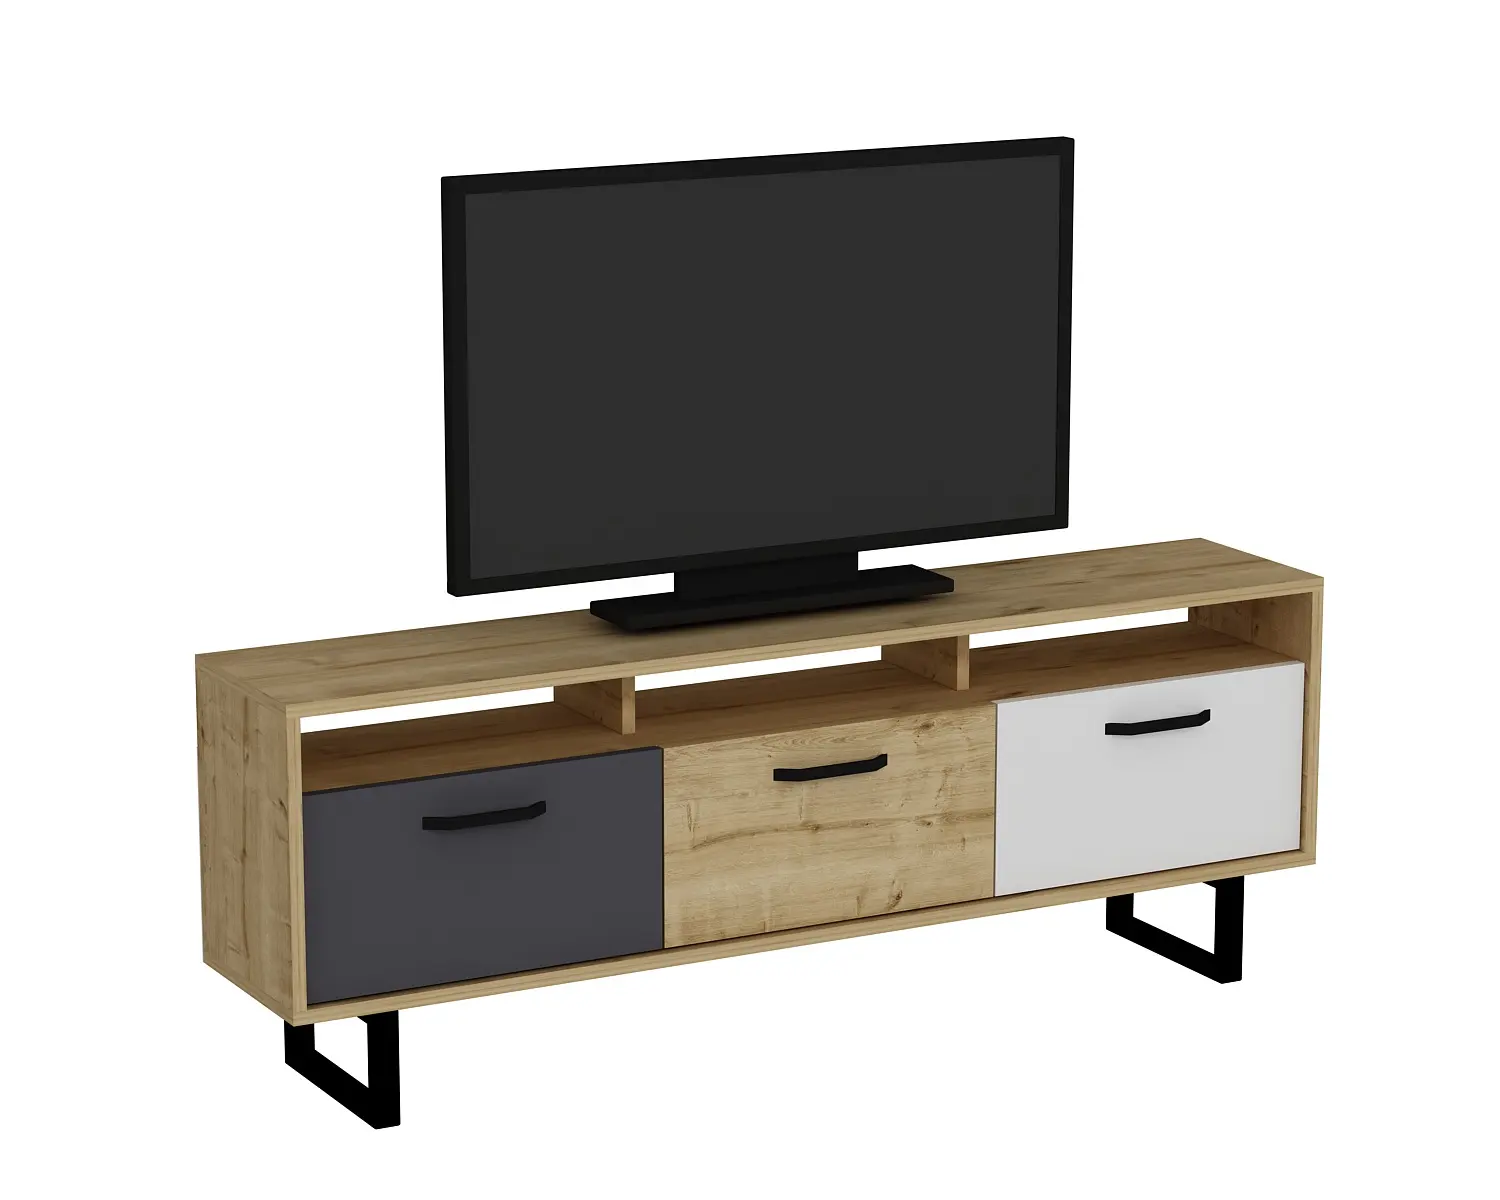 Agustine 150 cm de ancho TV Stand Cabinet Media Lowboard Entertainment Center con almacenamiento cerrado TV-Roble y gris oscuro y blanco